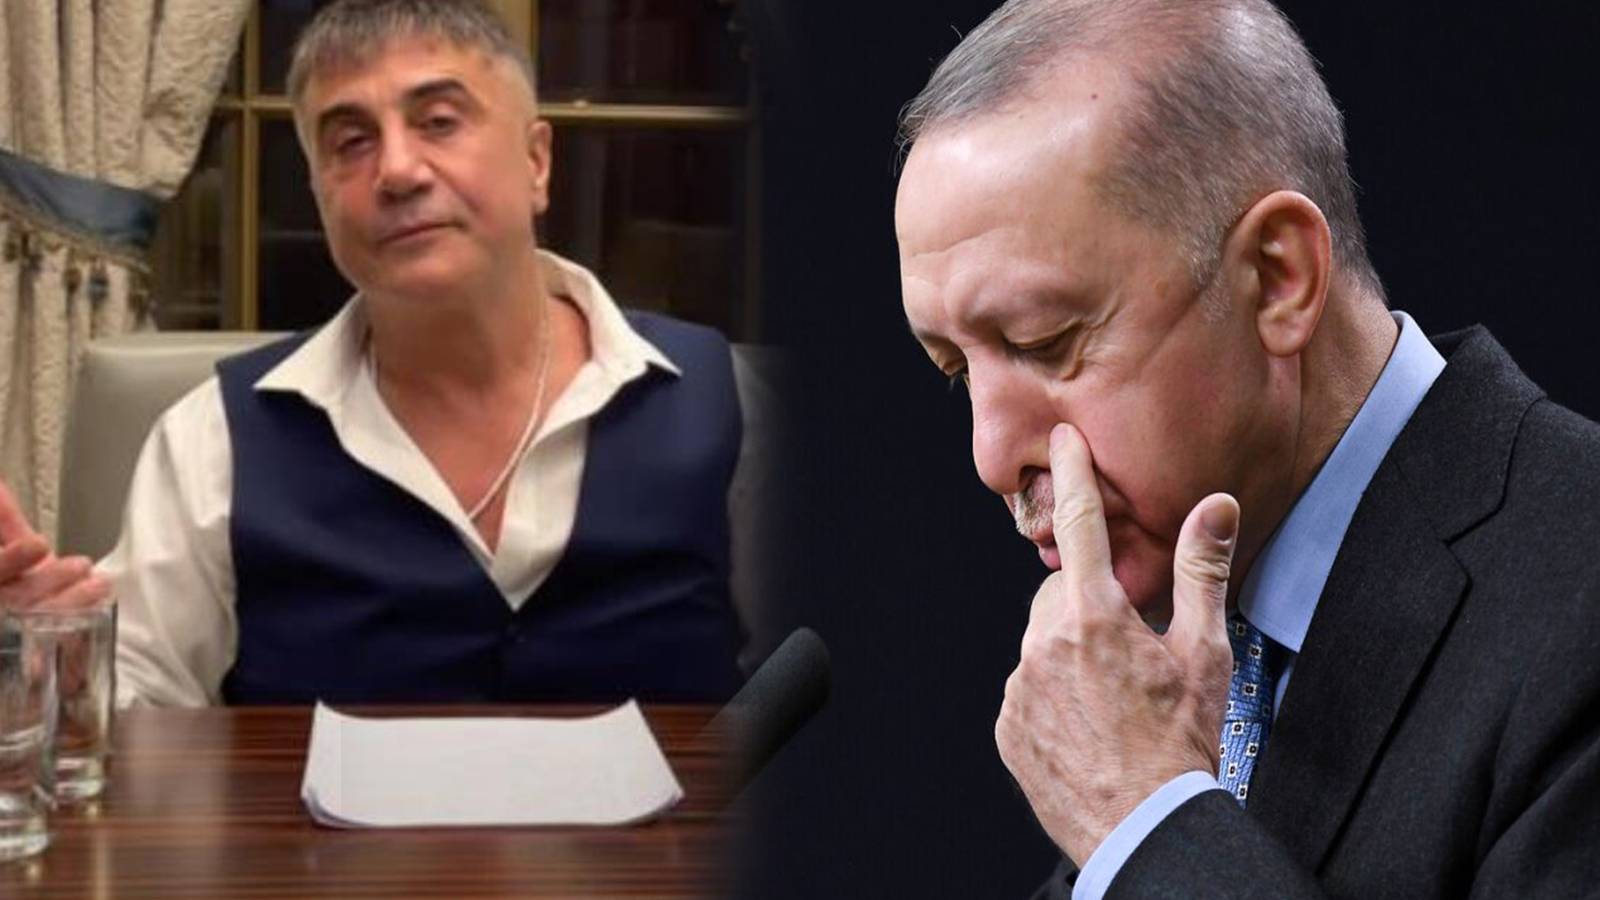 BAE-Türkiye anlaşmasının ardından gözler Sedat Peker'e çevrildi: İadesi istenebilir